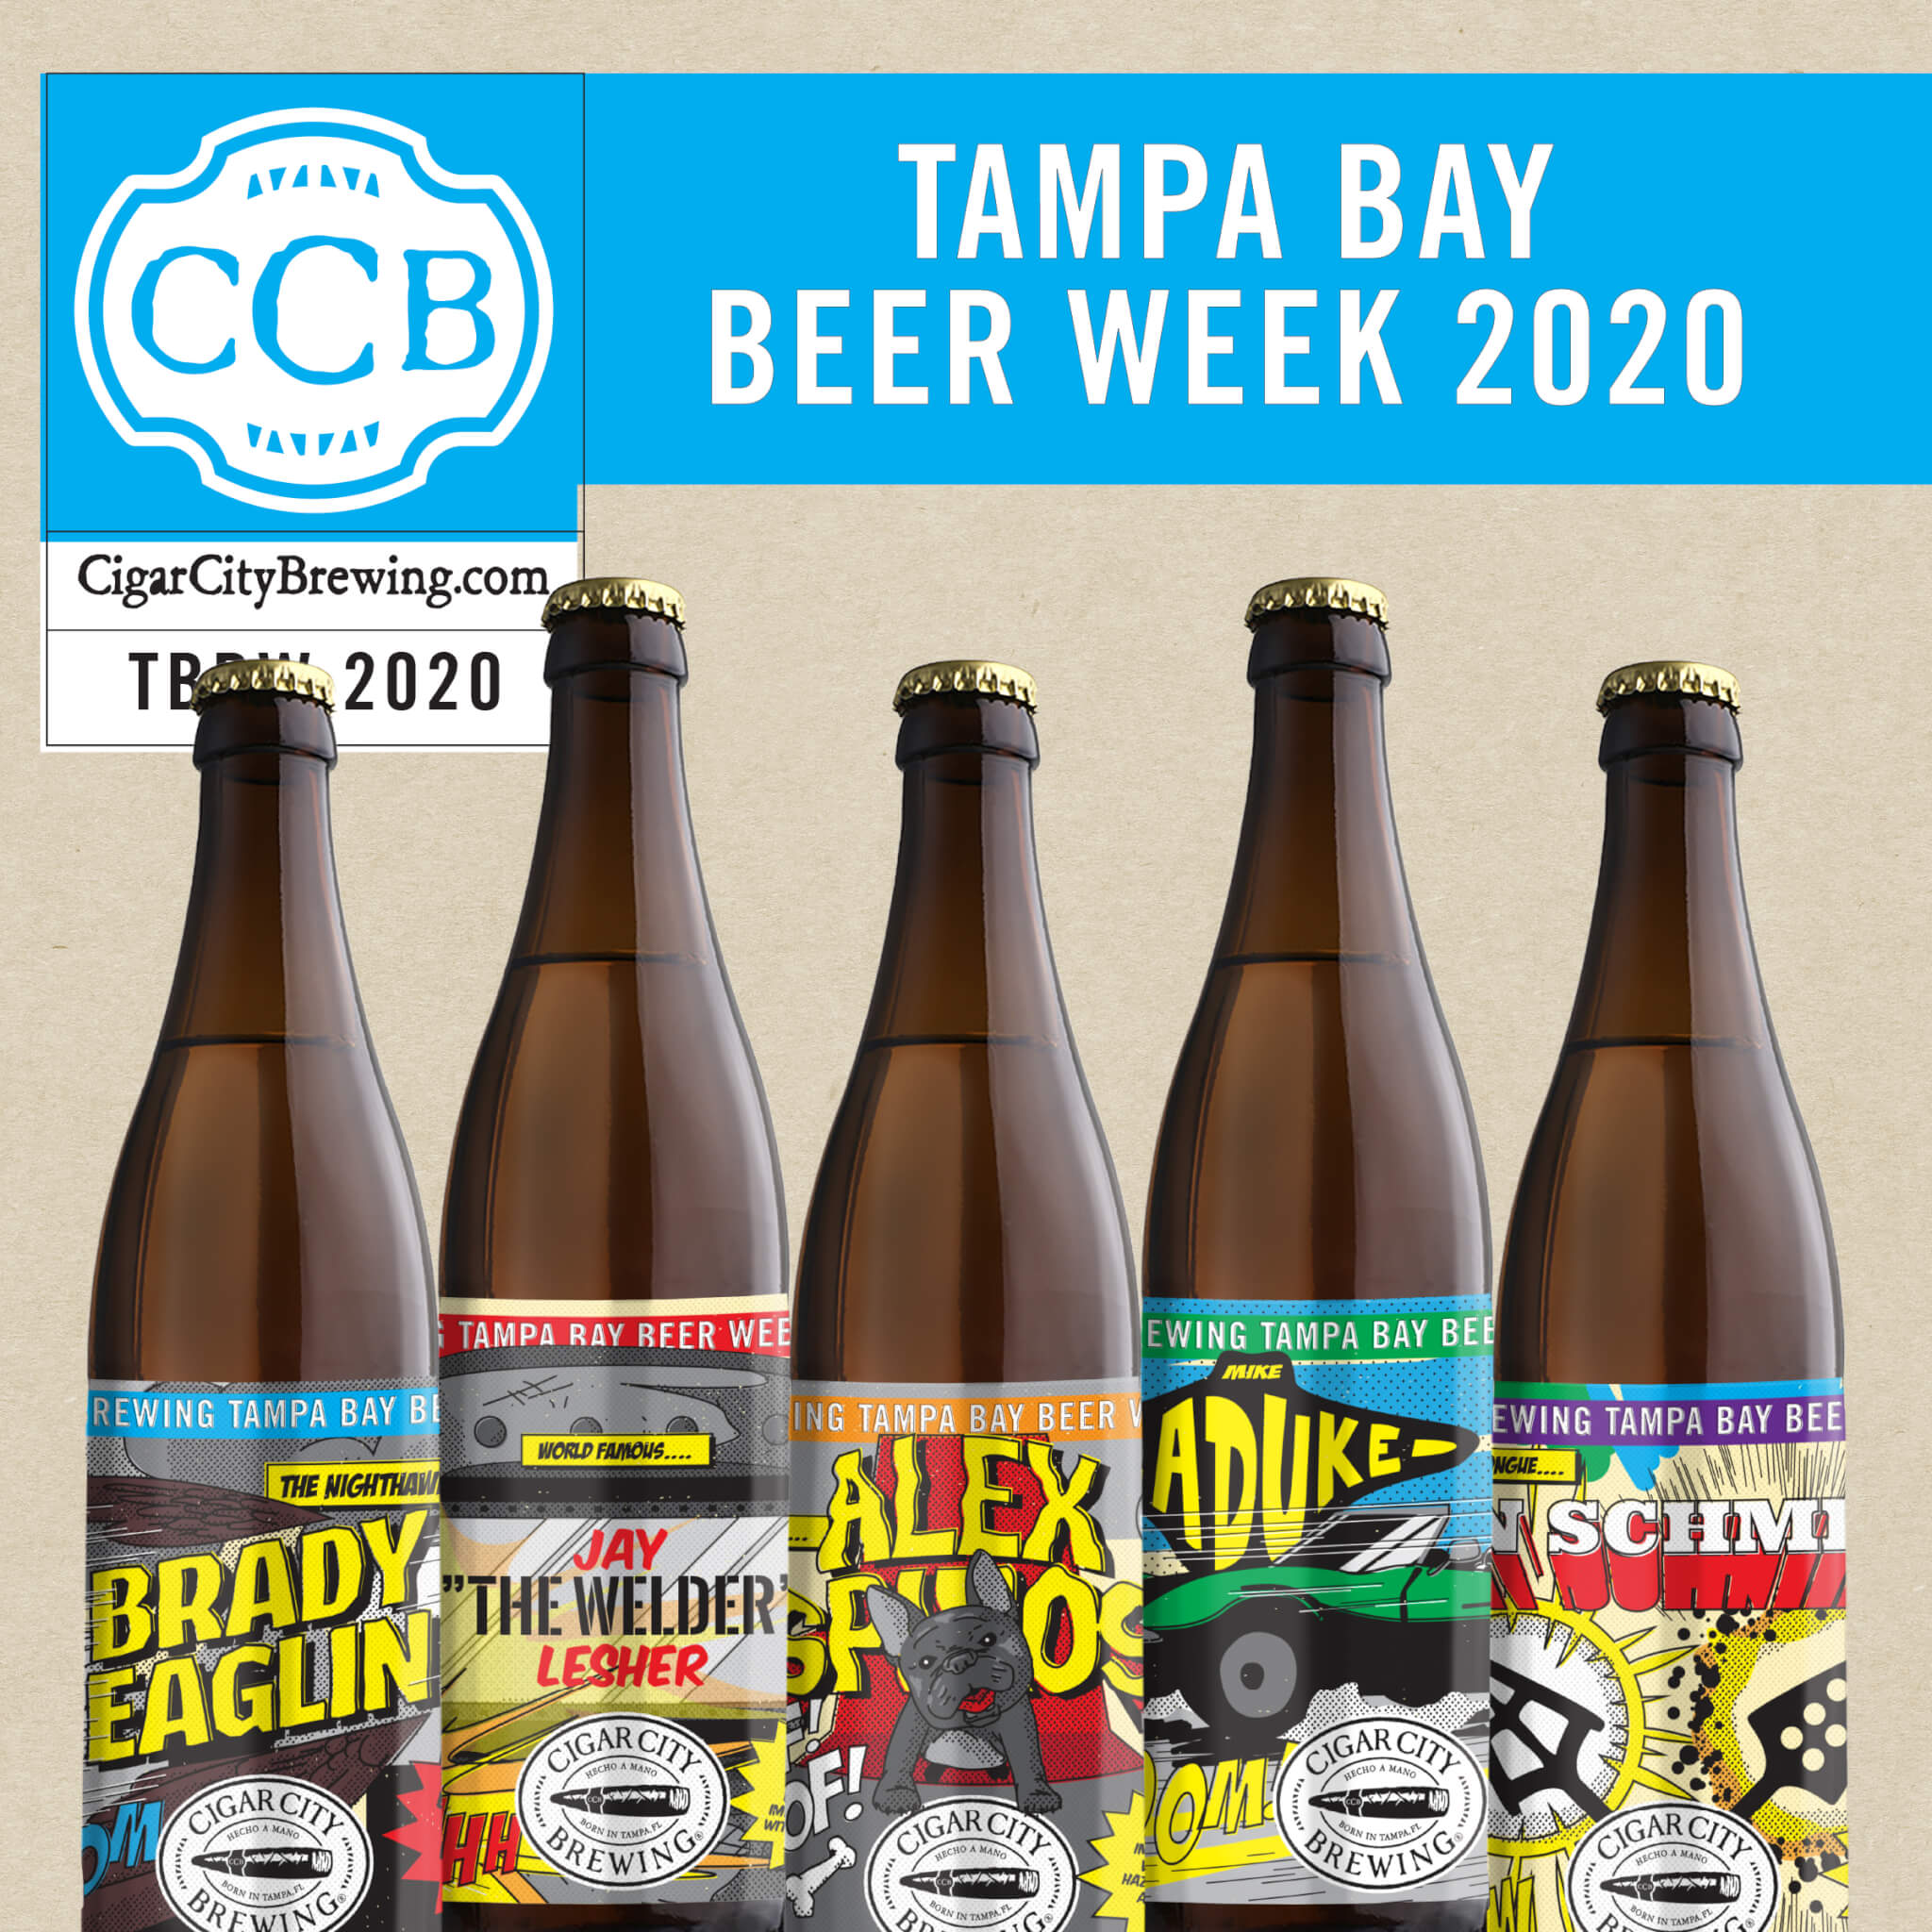 Tampa Bay Beer Week 2020 Special Release bottles